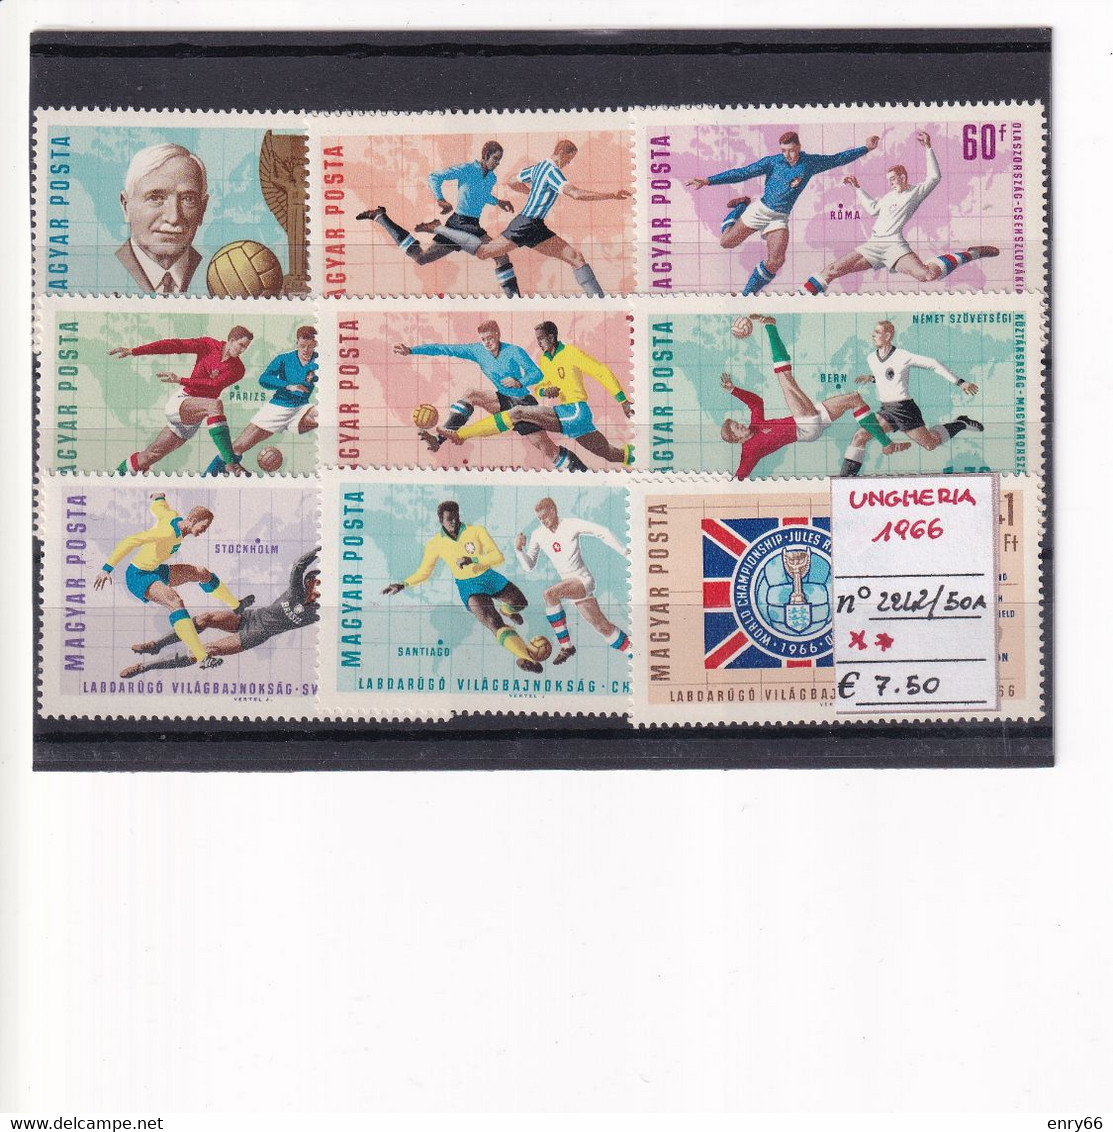 UNGHERIA 1966 N° 2242A/50A MNH - 1966 – England